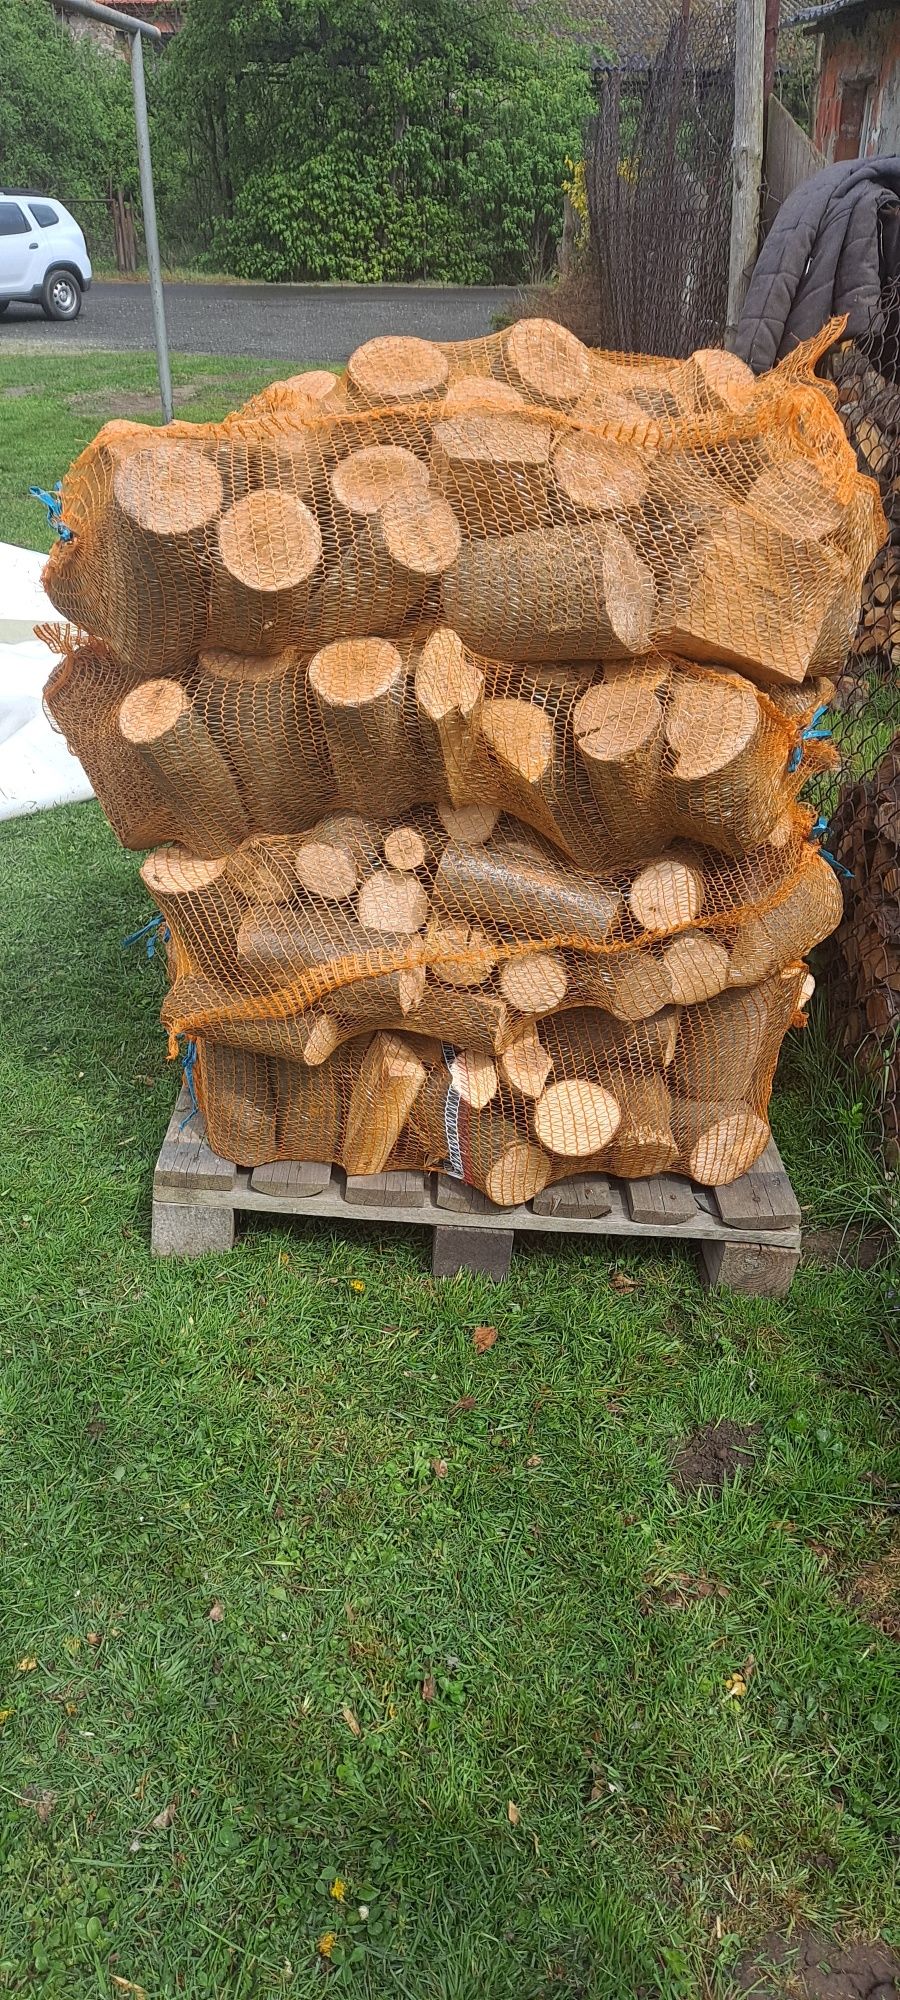 Drewno buk dąb suchy workowany możliwa dostawa